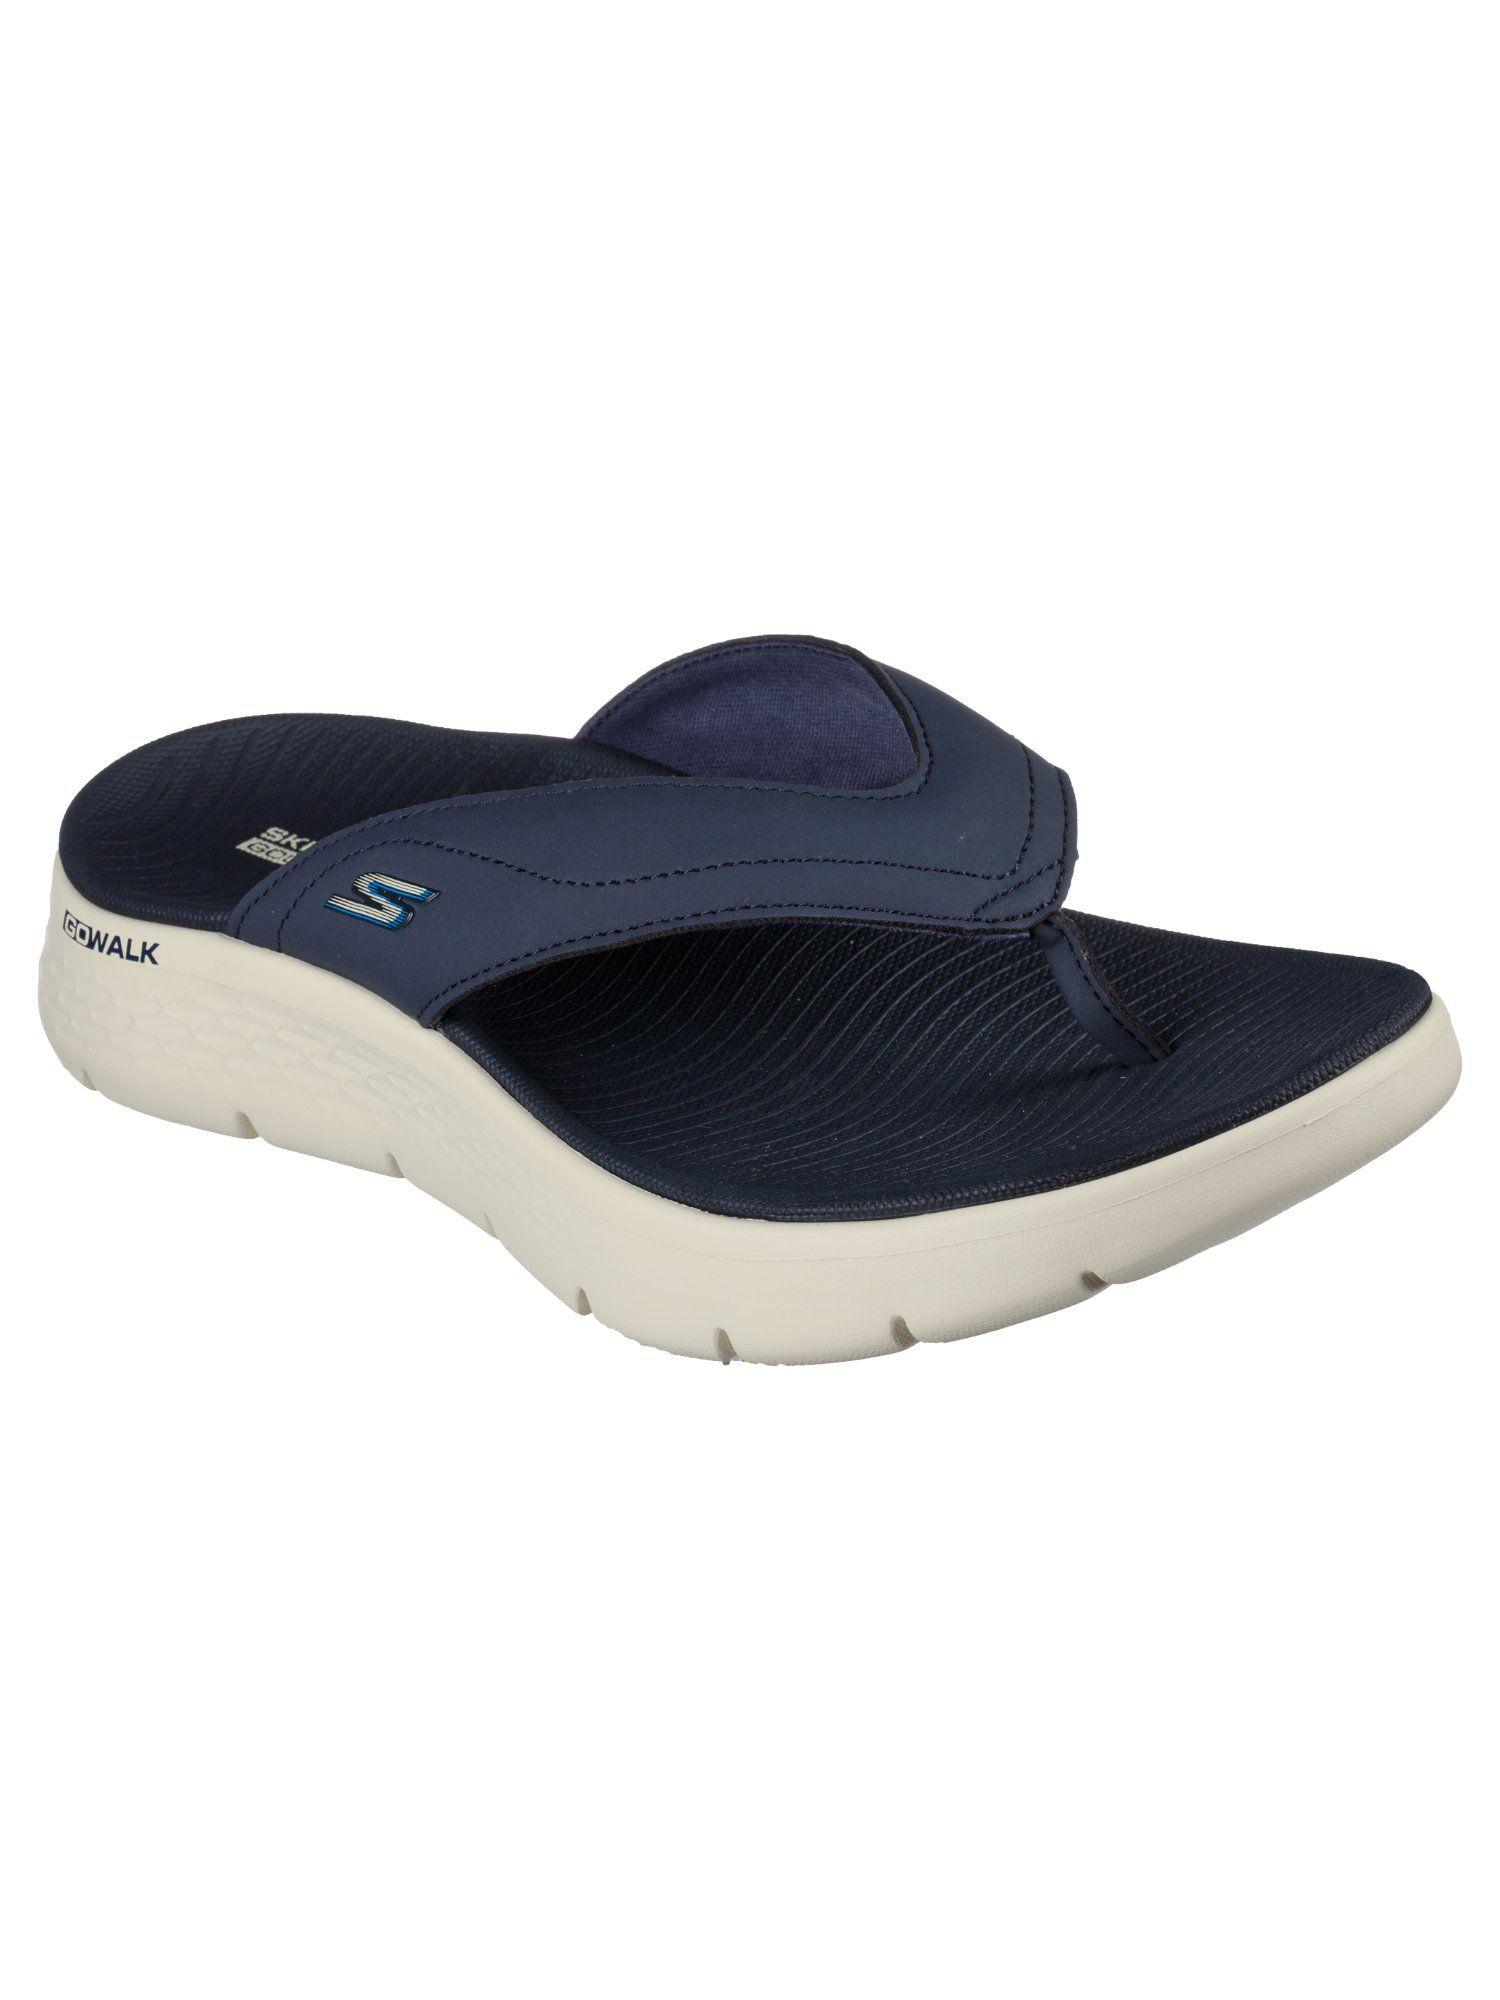 go walk flex sandal navy blue flipflops